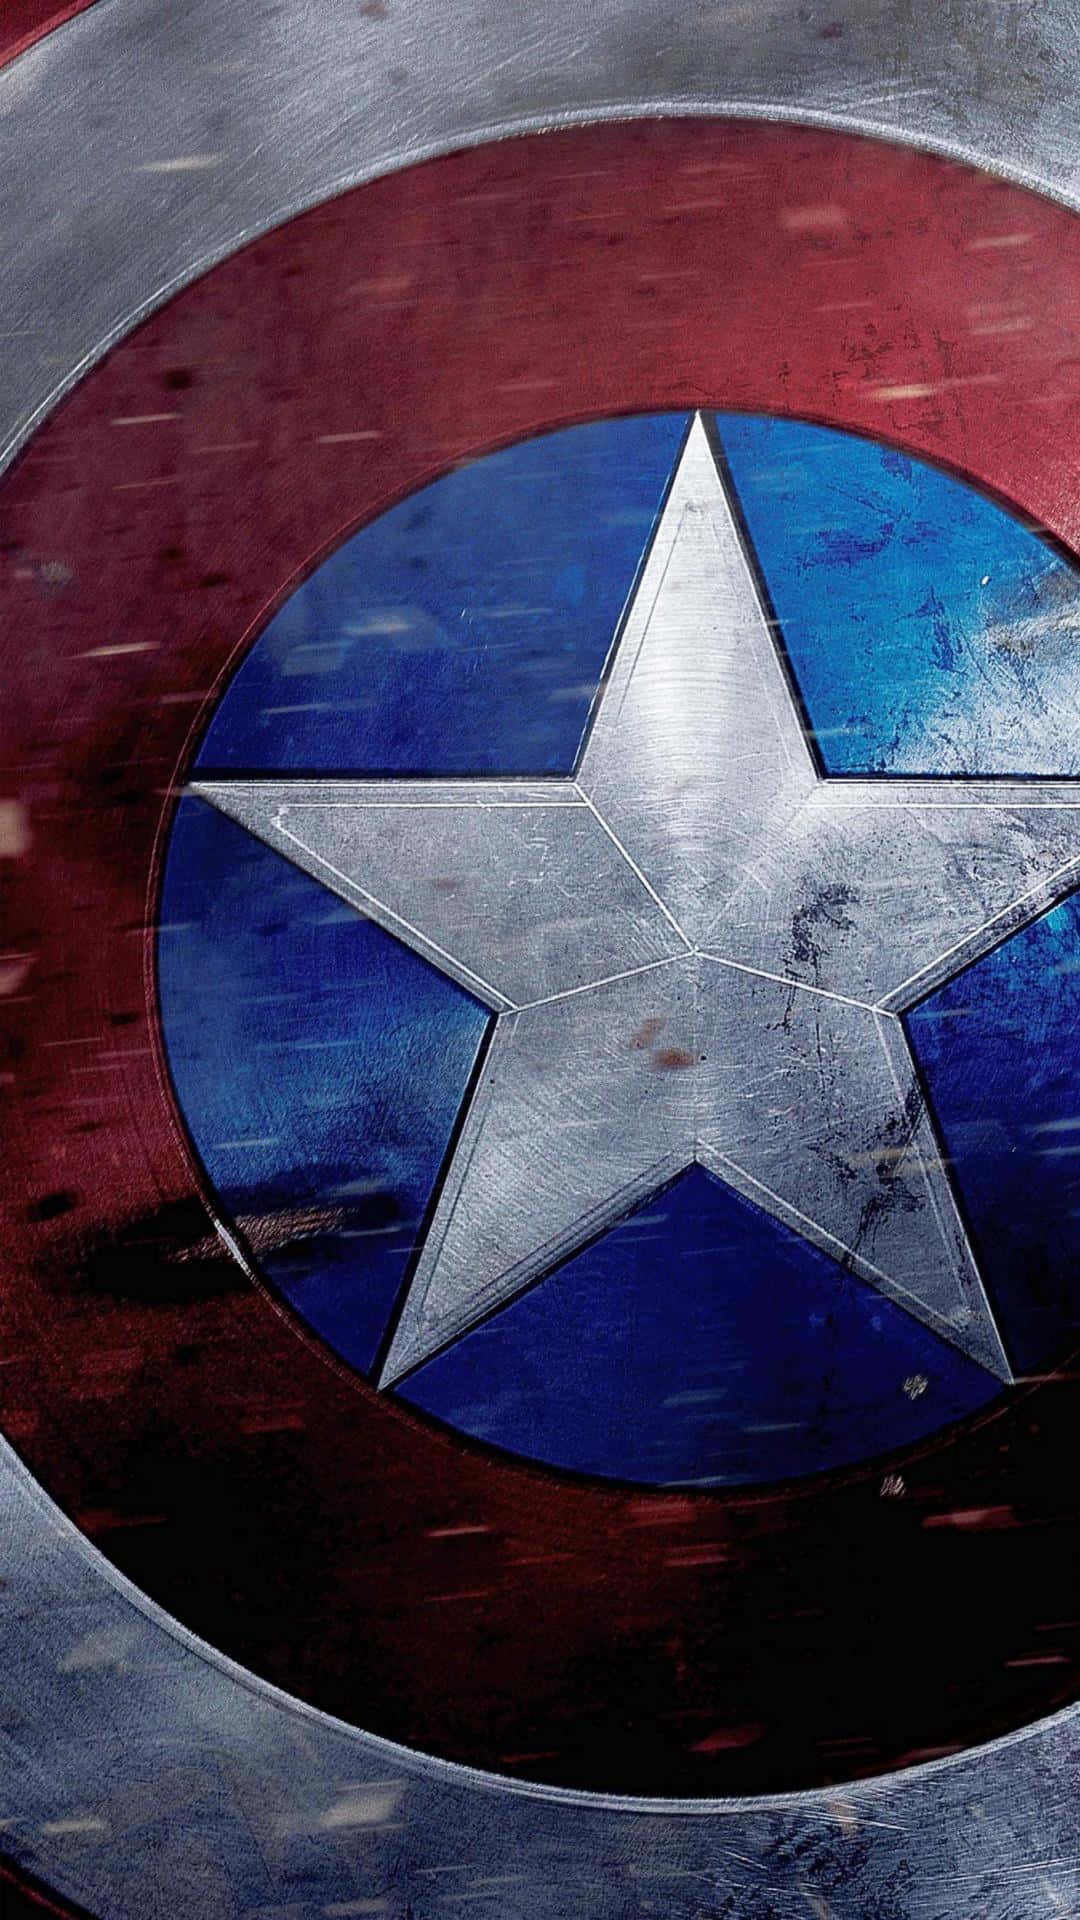 Fondode Pantalla Con El Audaz Logo Del Capitán América En Rojo, Blanco Y Azul. Fondo de pantalla